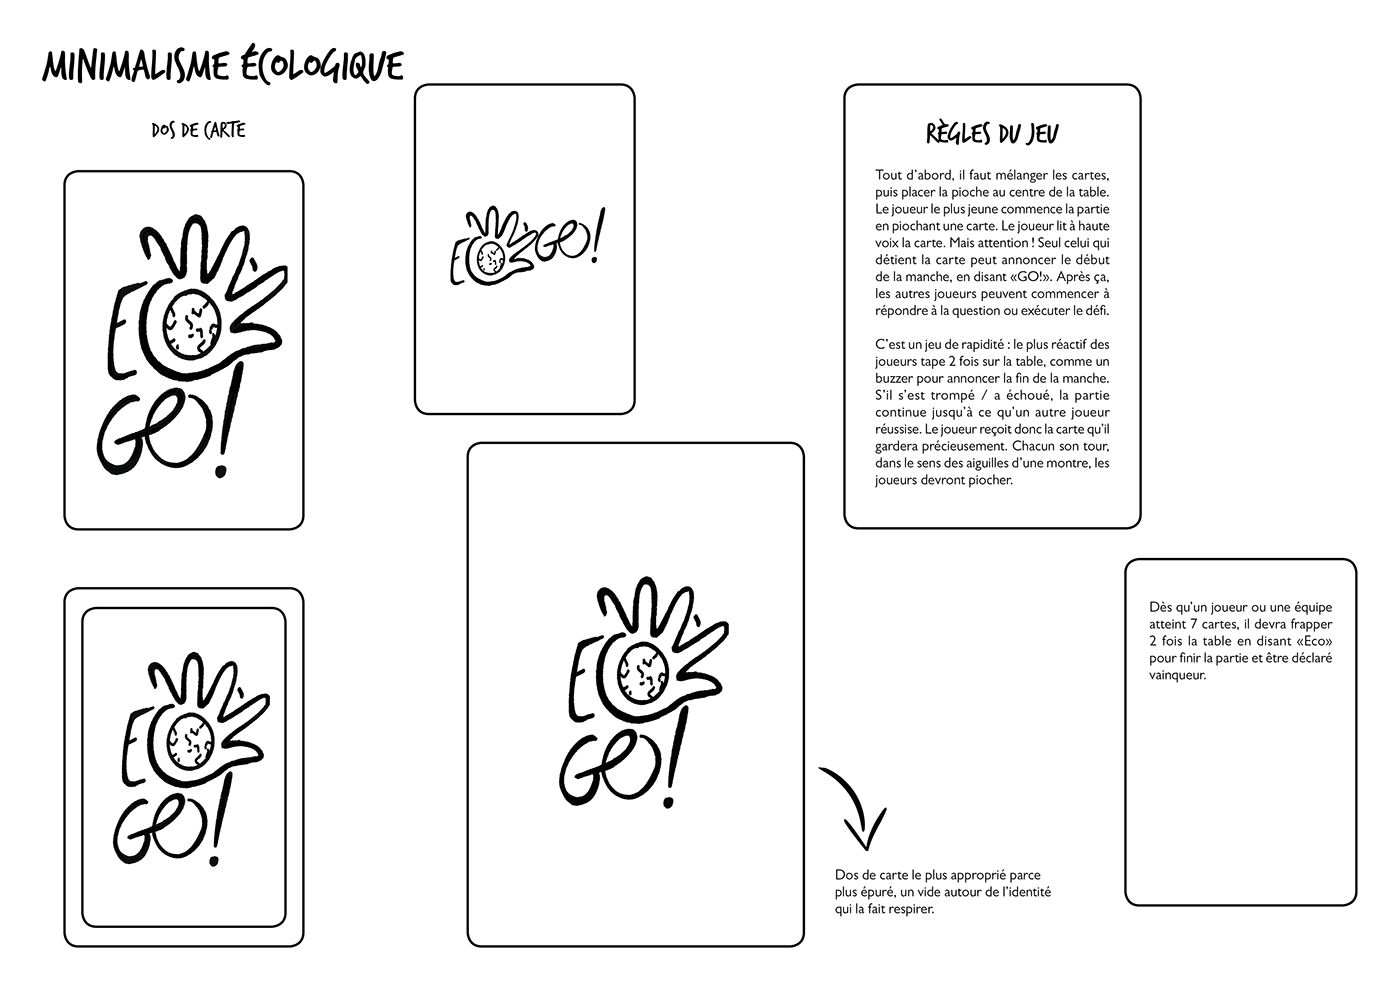 card card game Carte eco ecolo Ecology graphic design  Jeu de carte Minimalism Nature